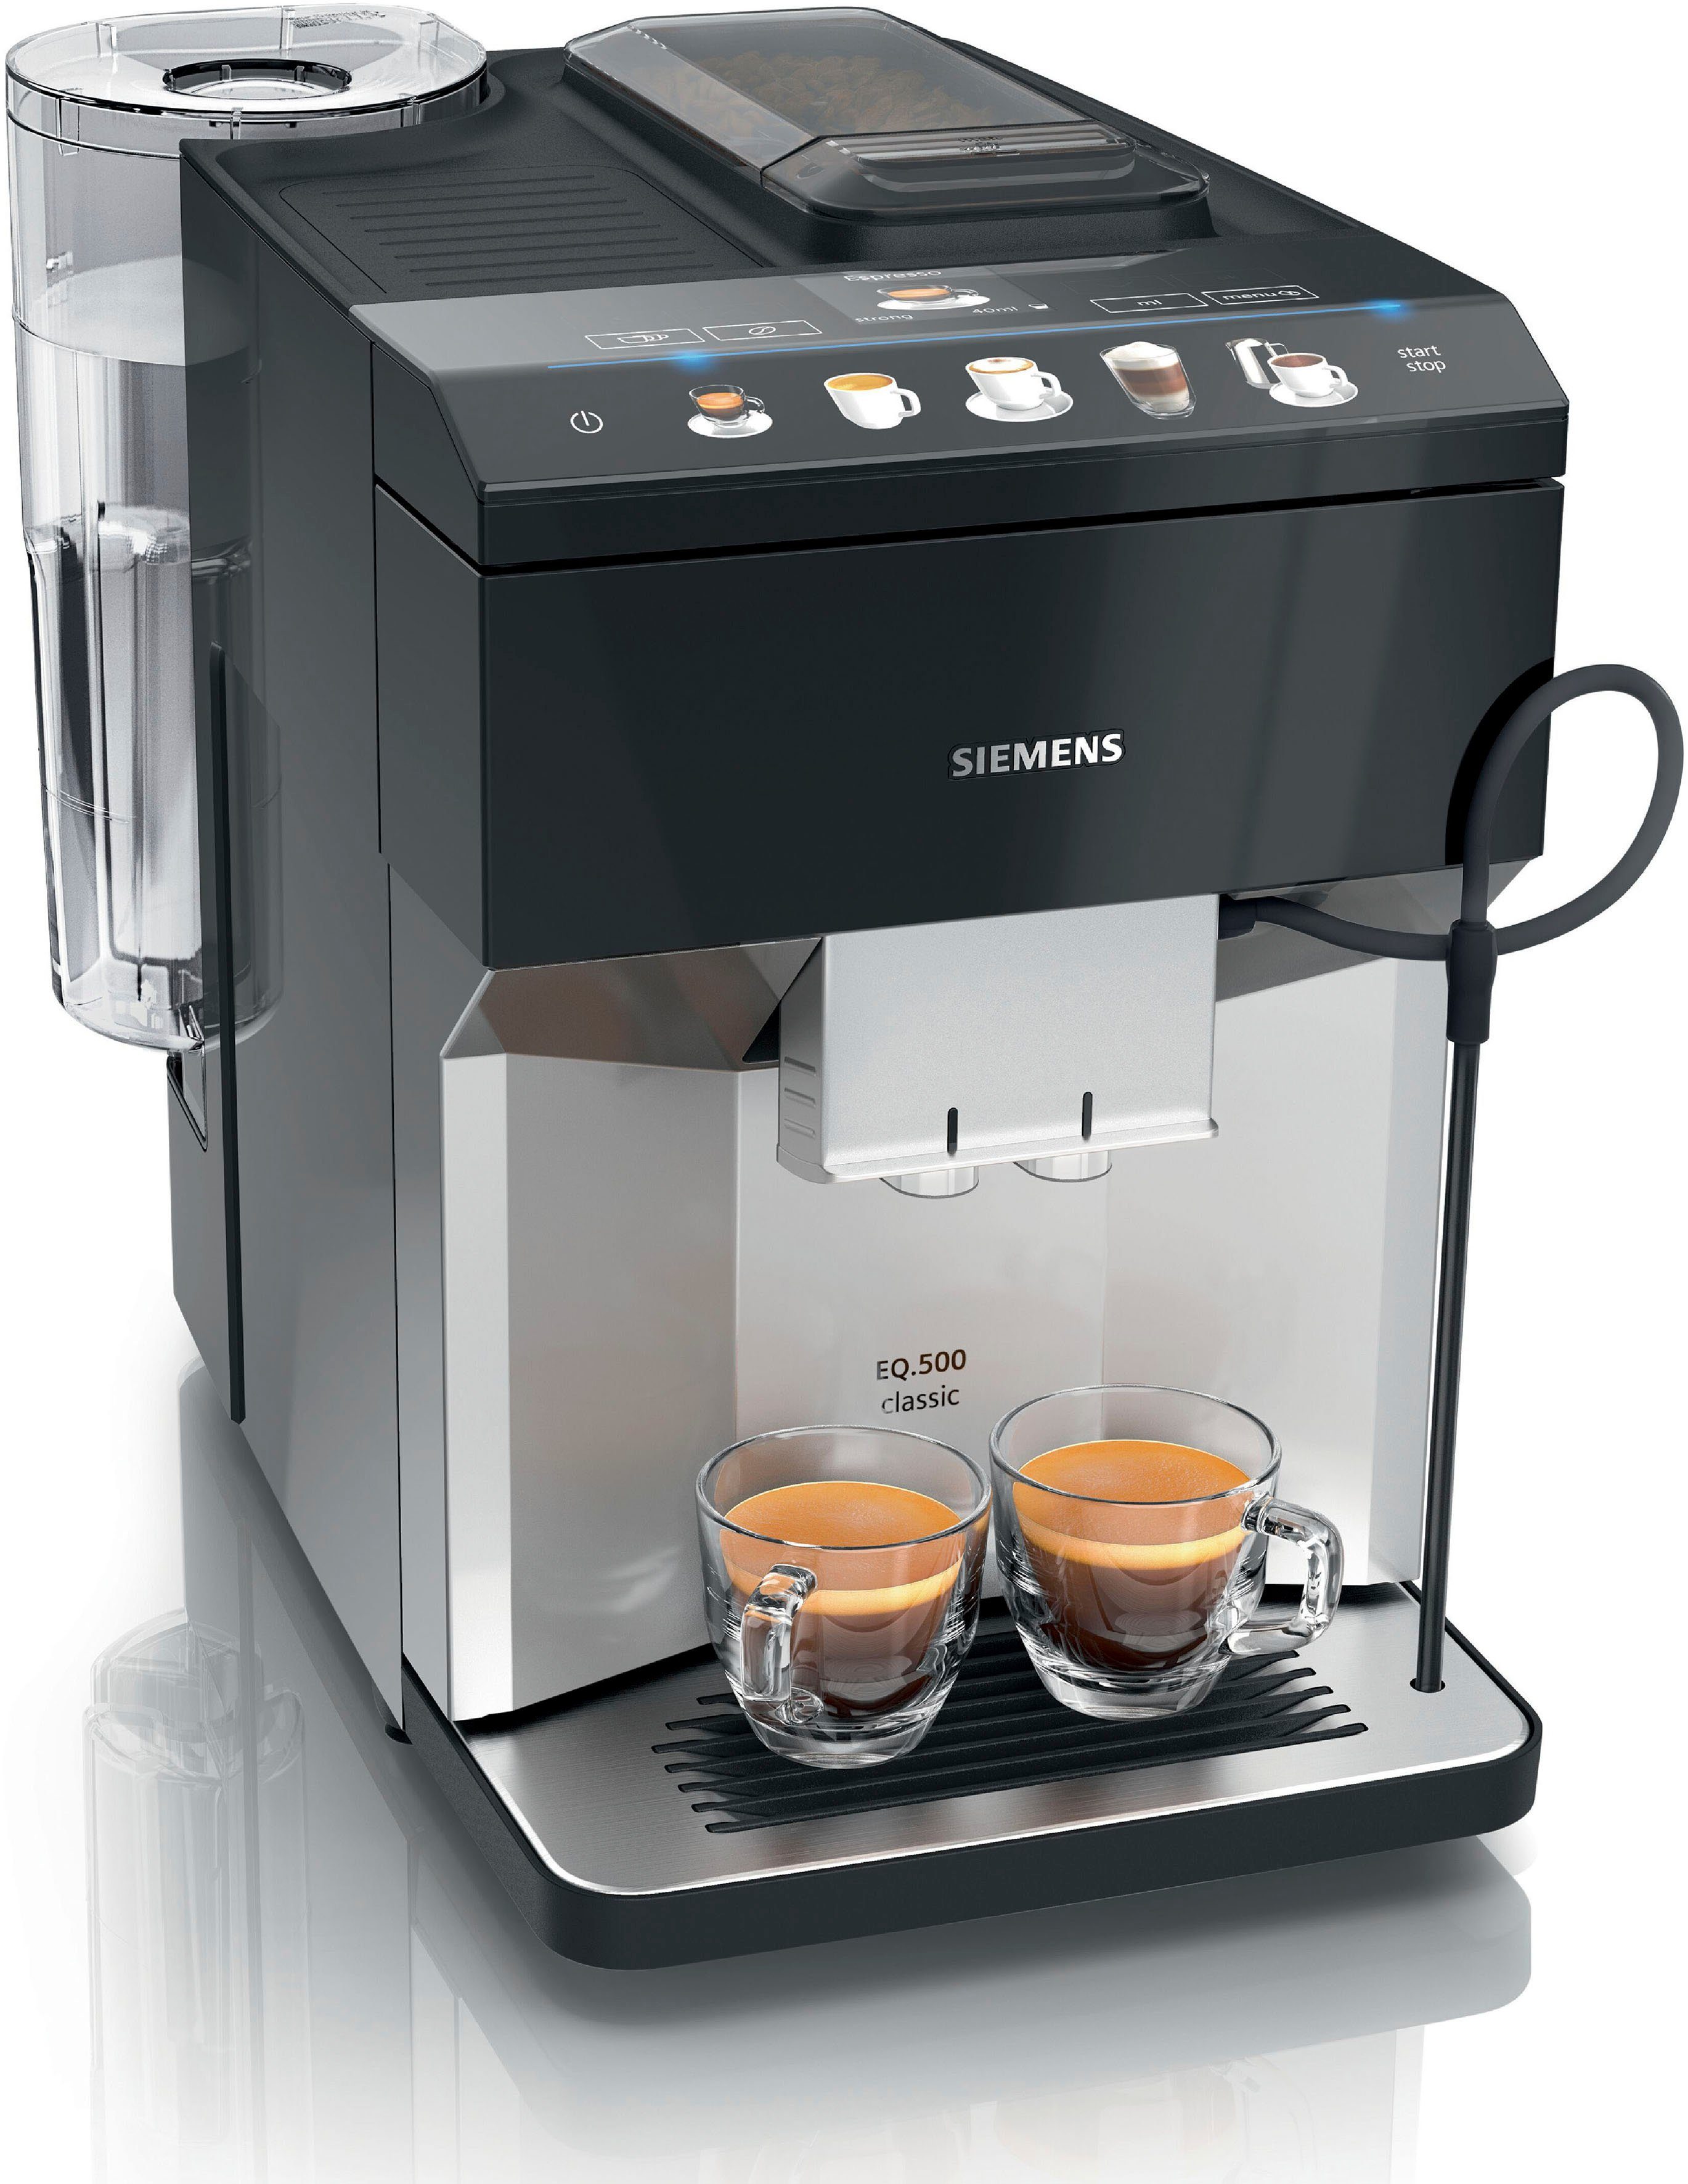 SIEMENS Kaffeevollautomat EQ.500 classic, TP505D01 | OTTO